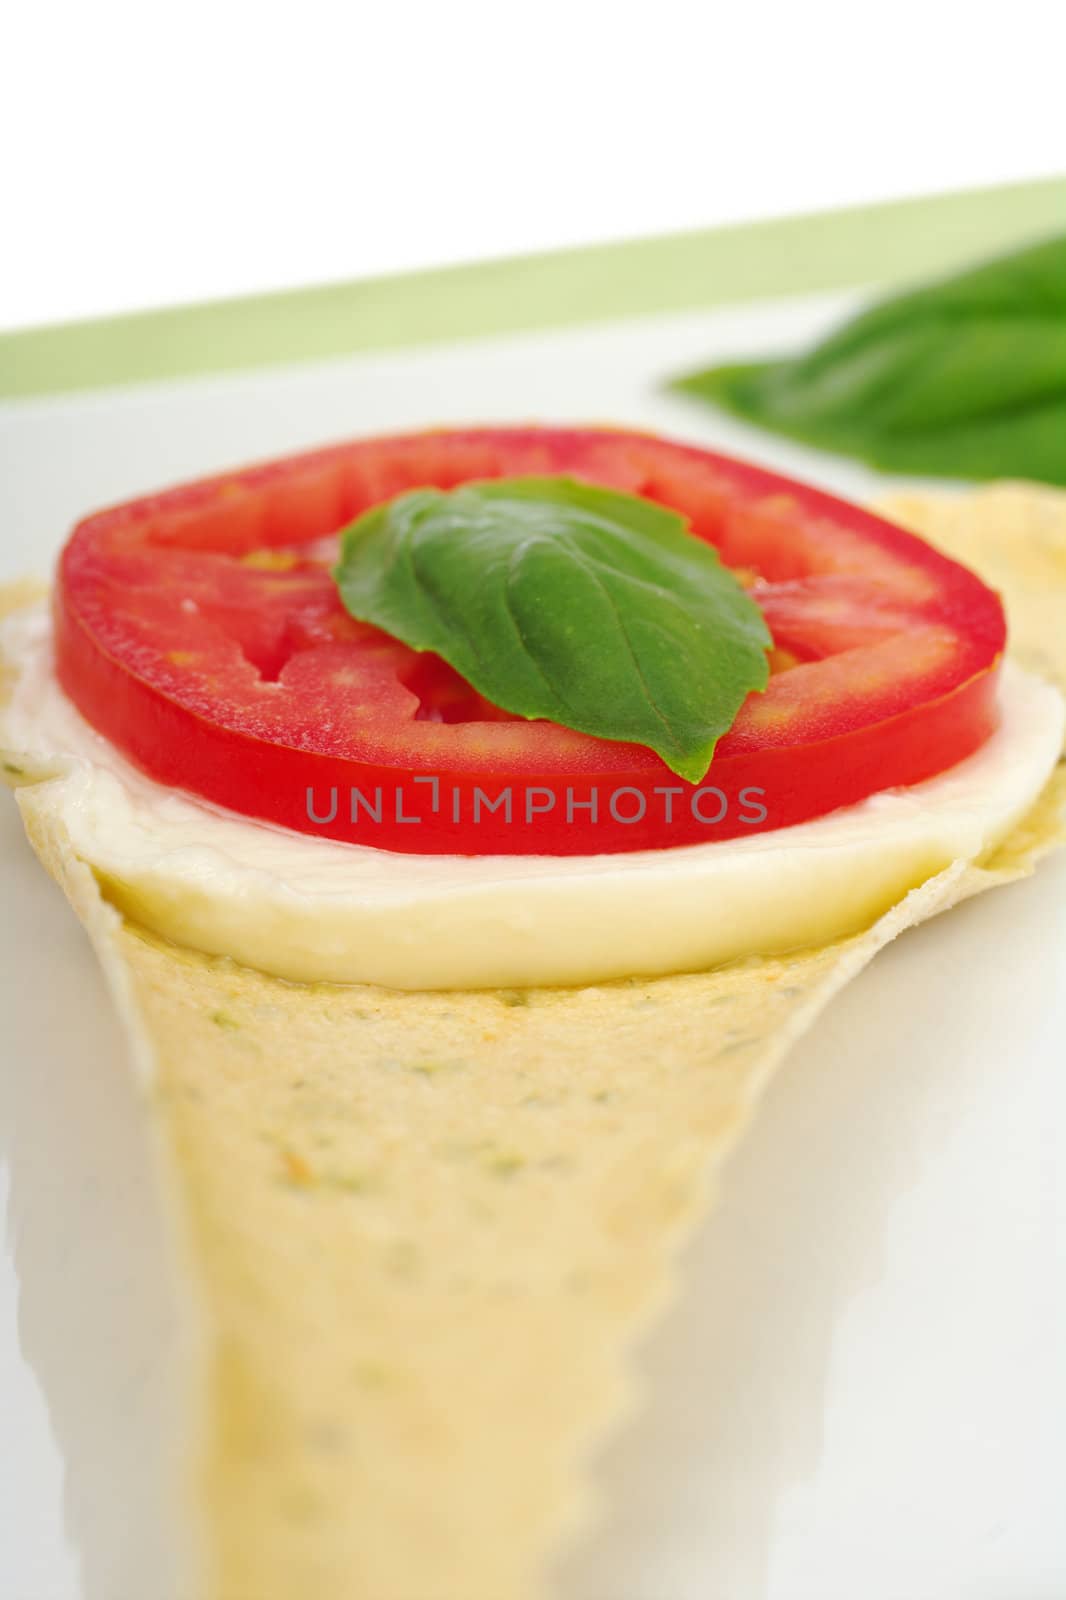 Appetizer: Mozzarella, Tomato and Basil by ildi